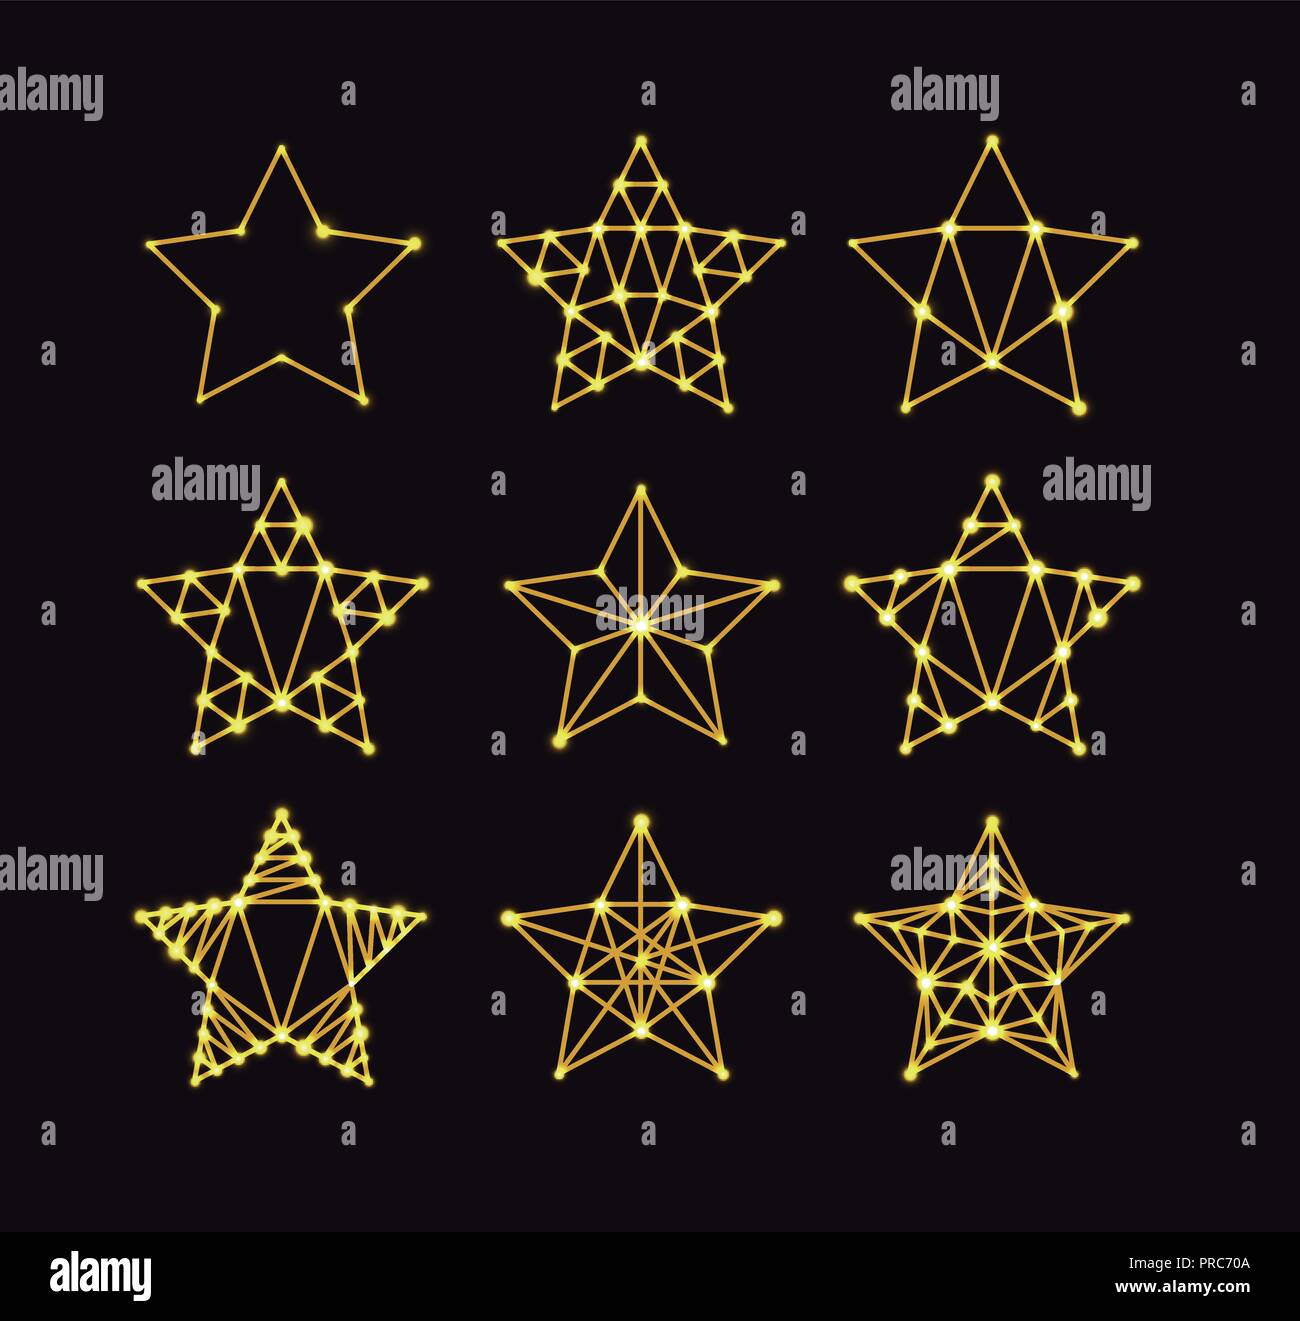 Golden Stars geometrico in stile art deco, variando i gradi di dettaglio. Il design moderno. Illustrazione Vettoriale su sfondo scuro Illustrazione Vettoriale